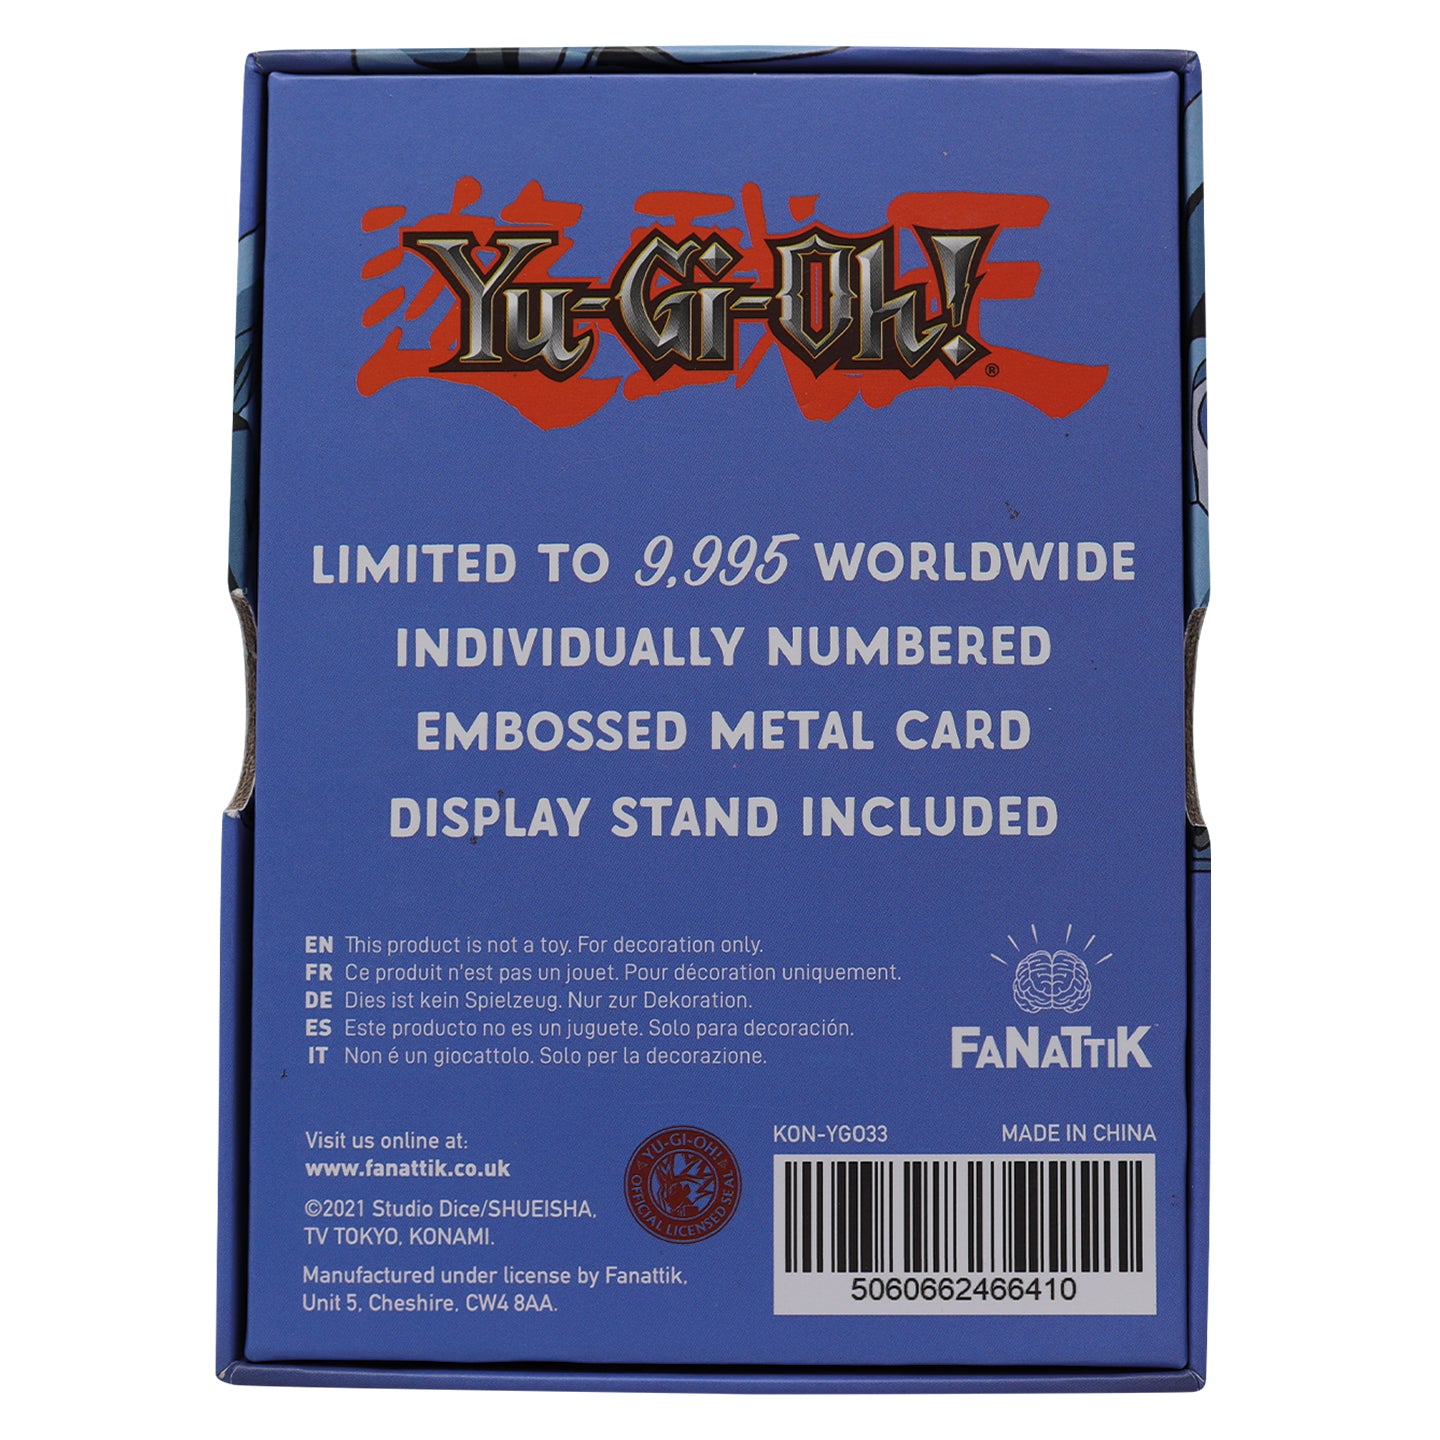 Yu-Gi-Oh! Limited Edition Blue Eyes Toon Dragon Metal Card